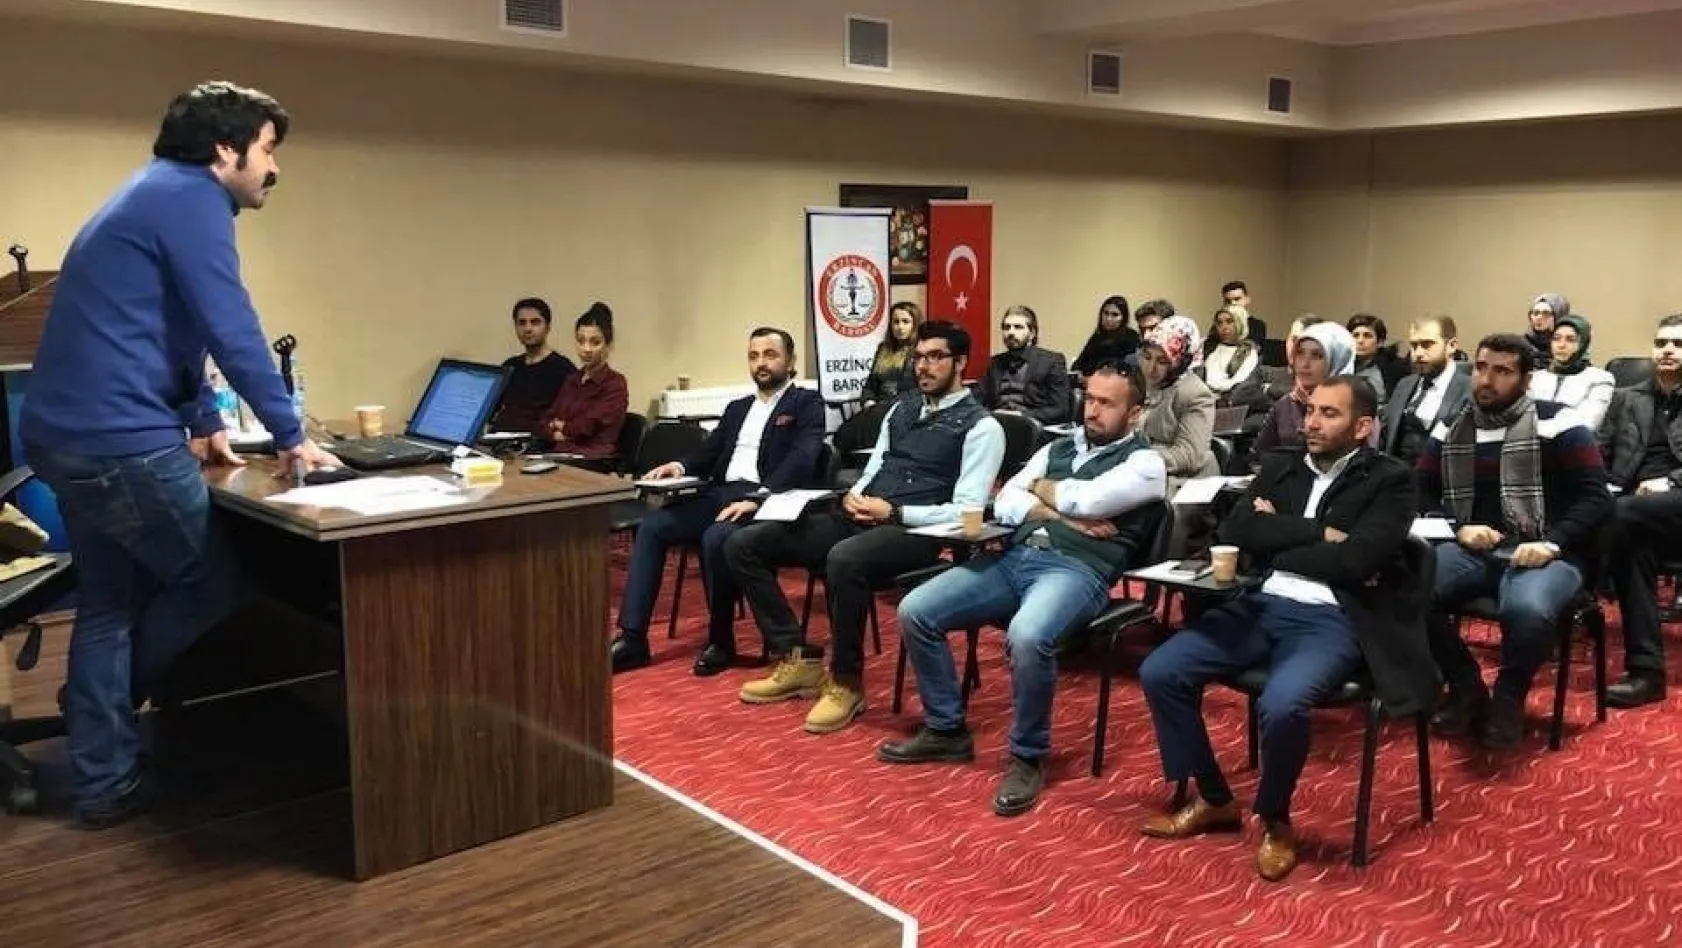 Erzincan Barosundan avukatlara uzlaştırmacı eğitim
